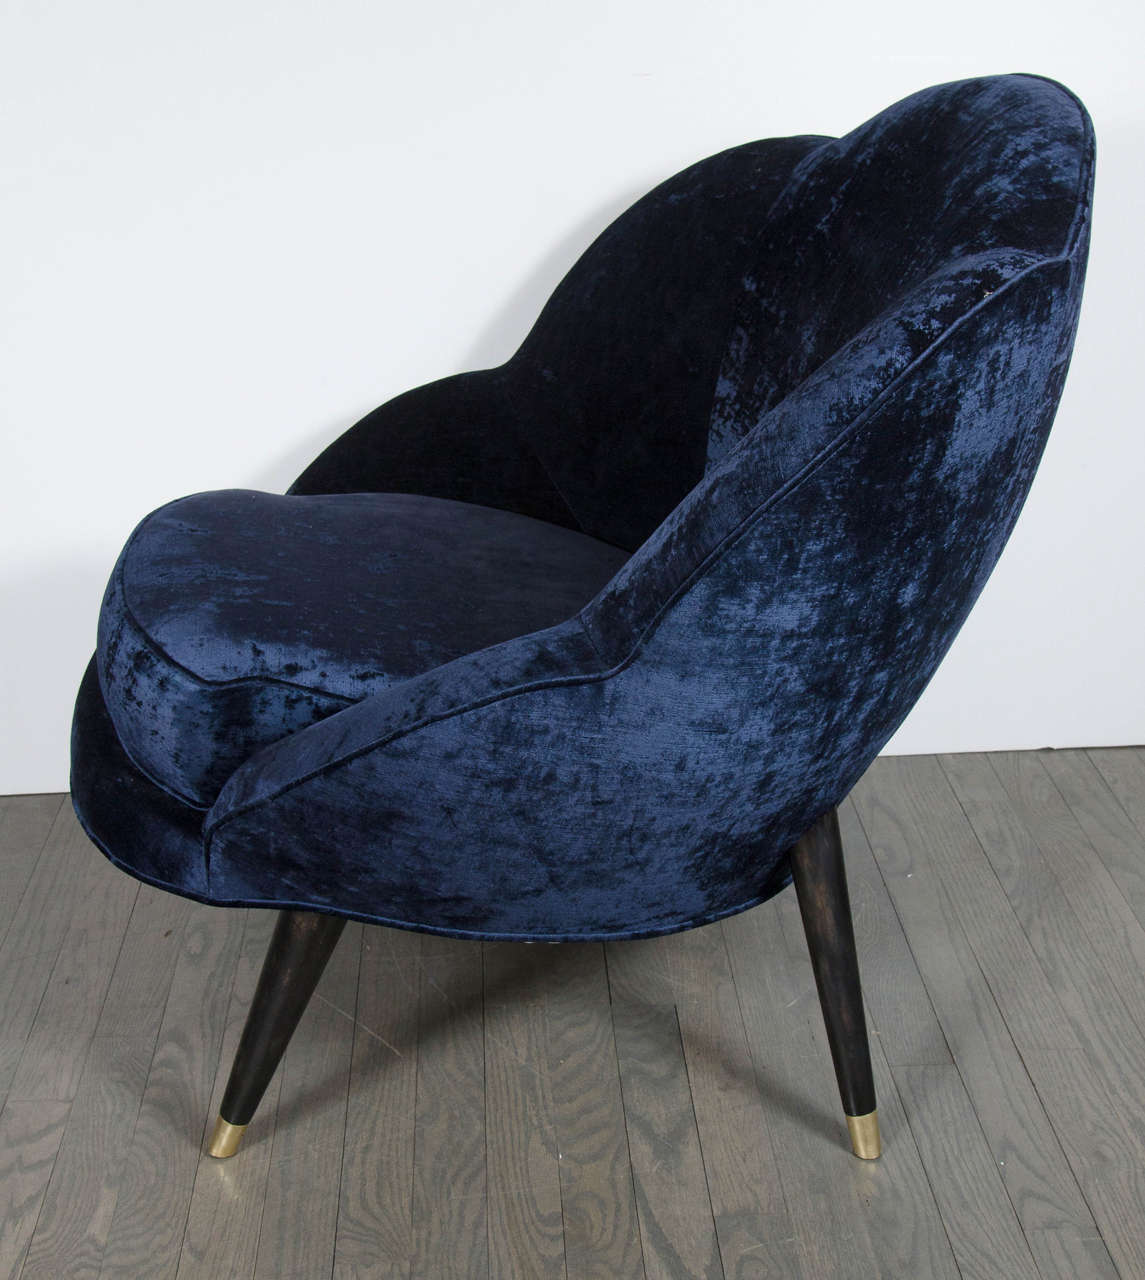 American Mid-Century Modernist 'Flower' Chair in Sapphire Blue Velvet Upholstery